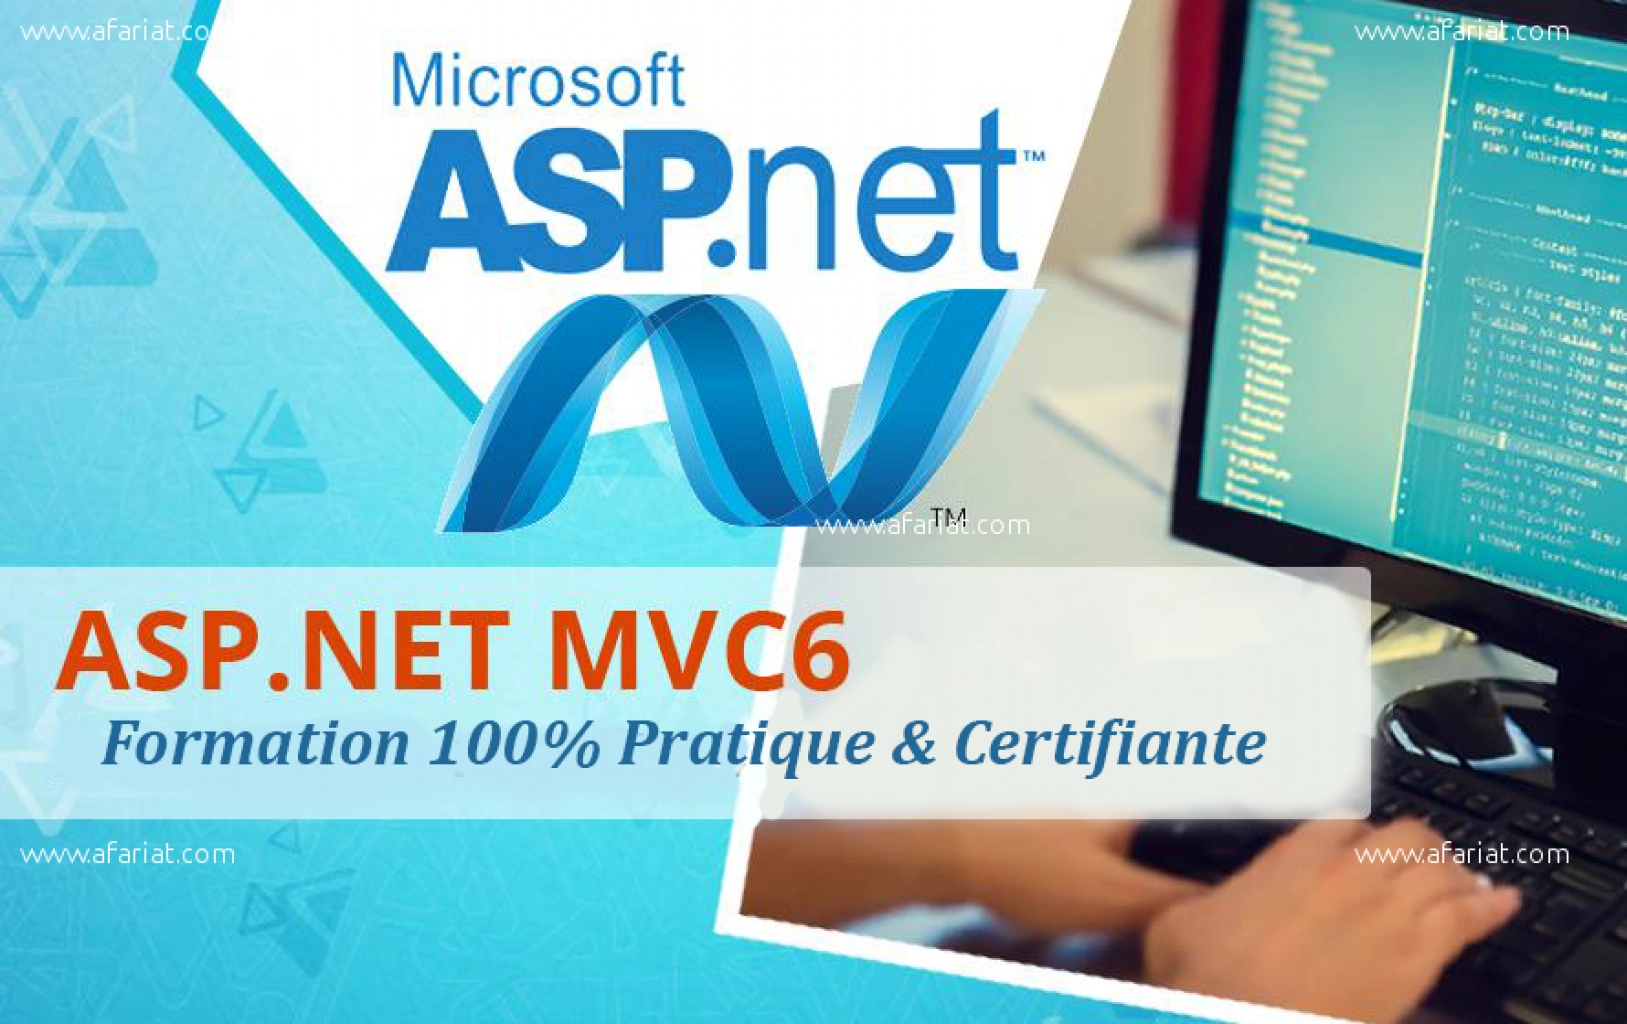 Formation Pratique Certifiée Asp.Net MVC 6